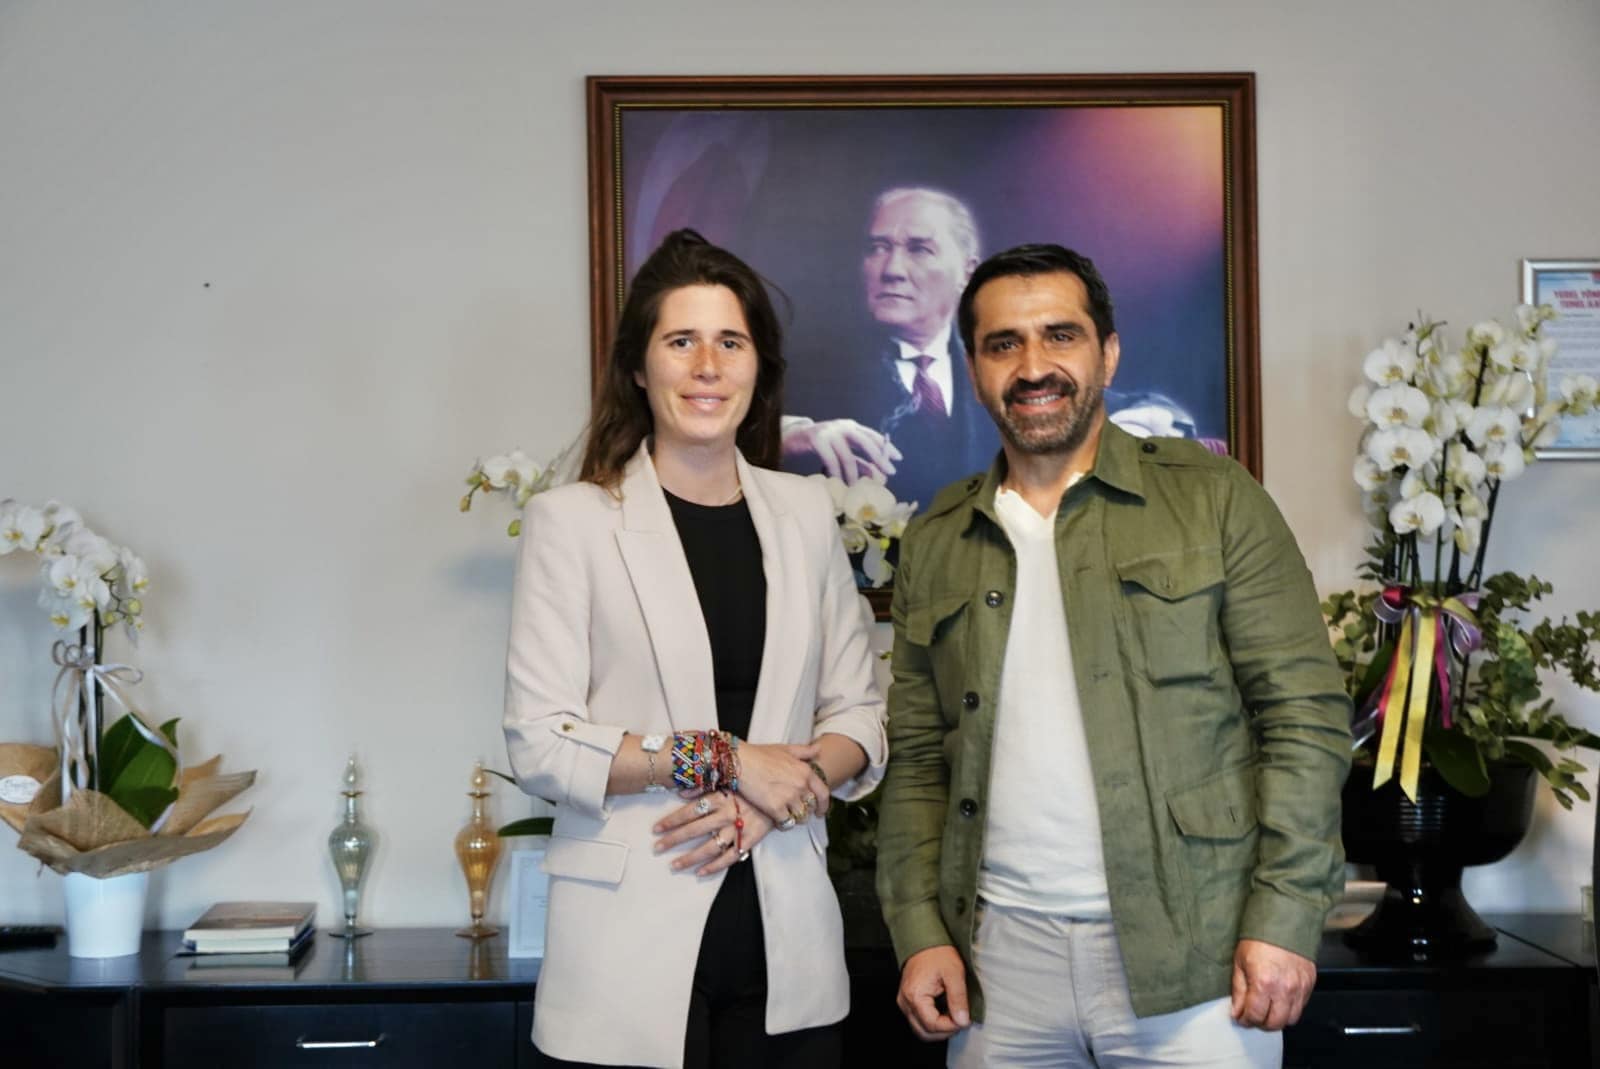 Ovacık Belediye Başkanı Mustafa Sarıgül, başka bir başkanı ziyaret ederek yerel yönetim ilişkilerini güçlendirdi.